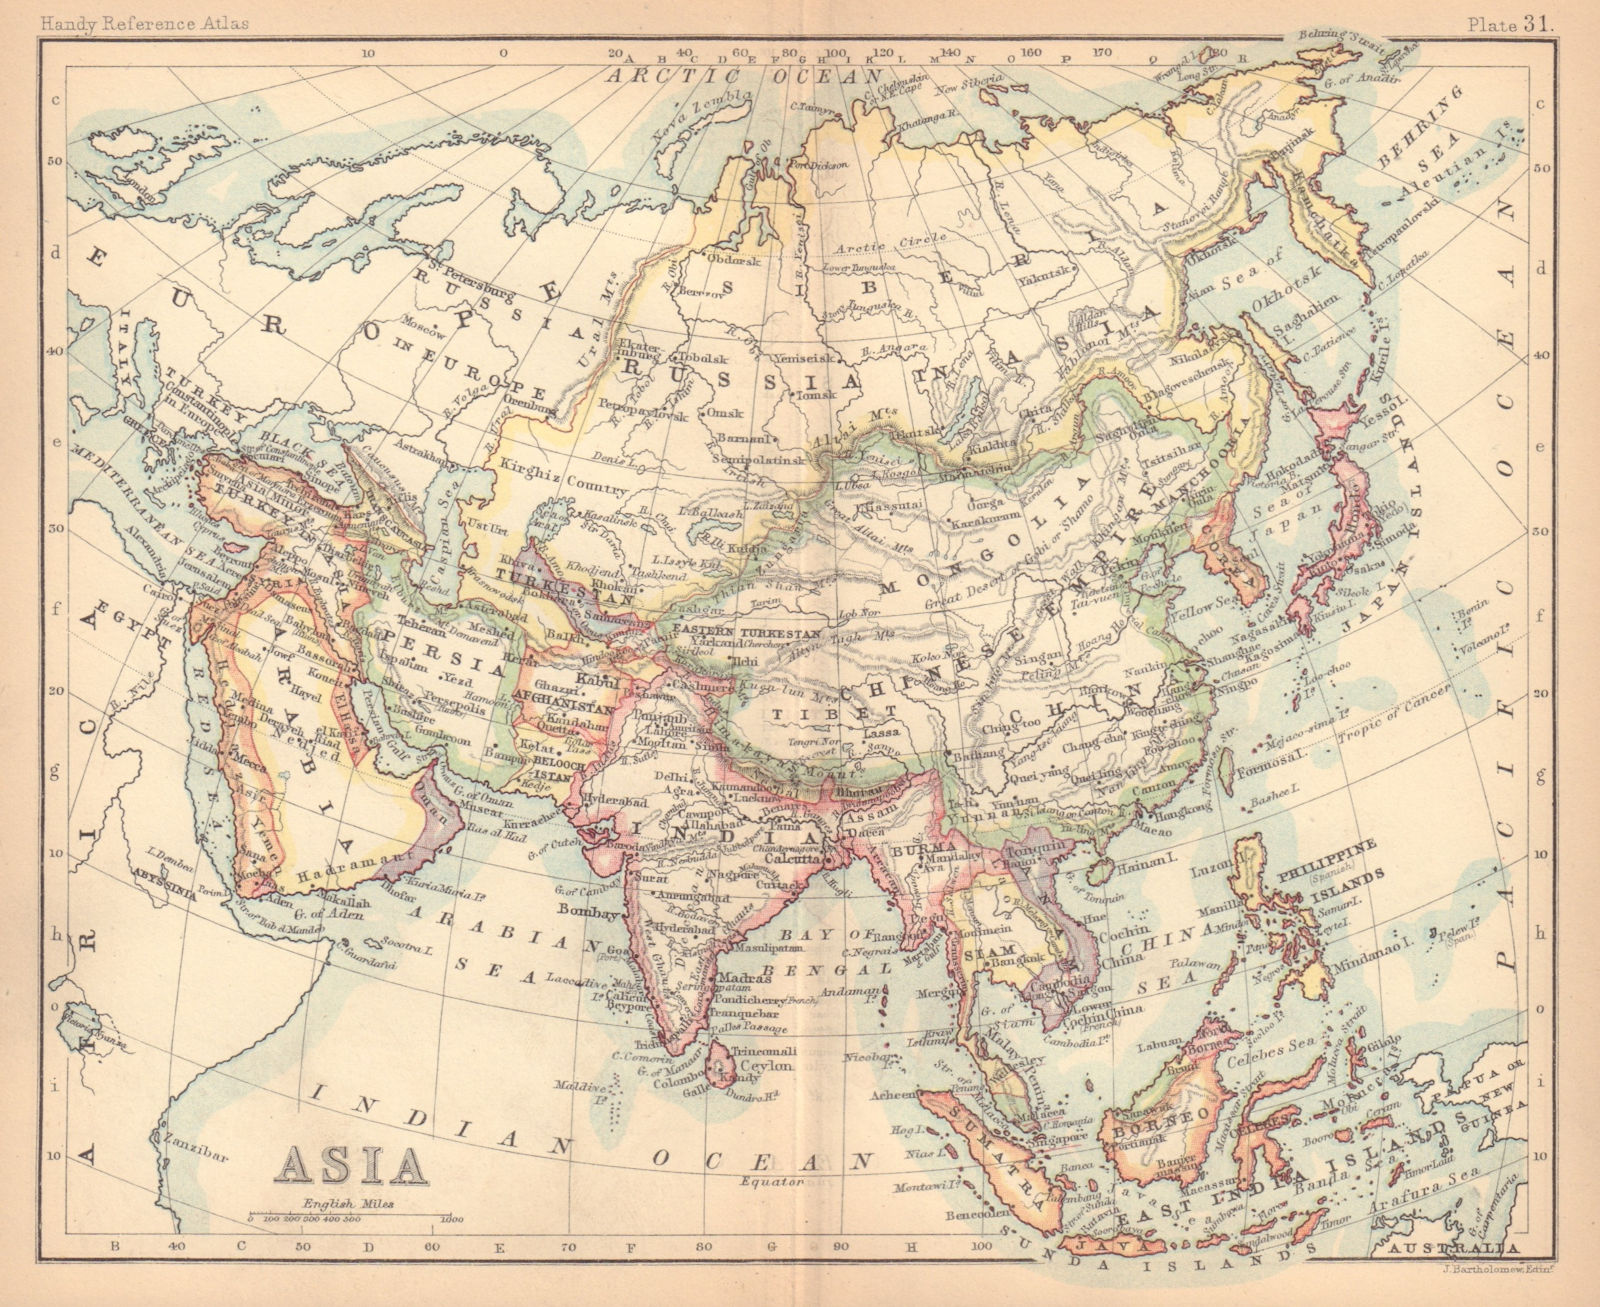 Asia. Persia Siam Anam China Corea. BARTHOLOMEW 1888 old antique map chart